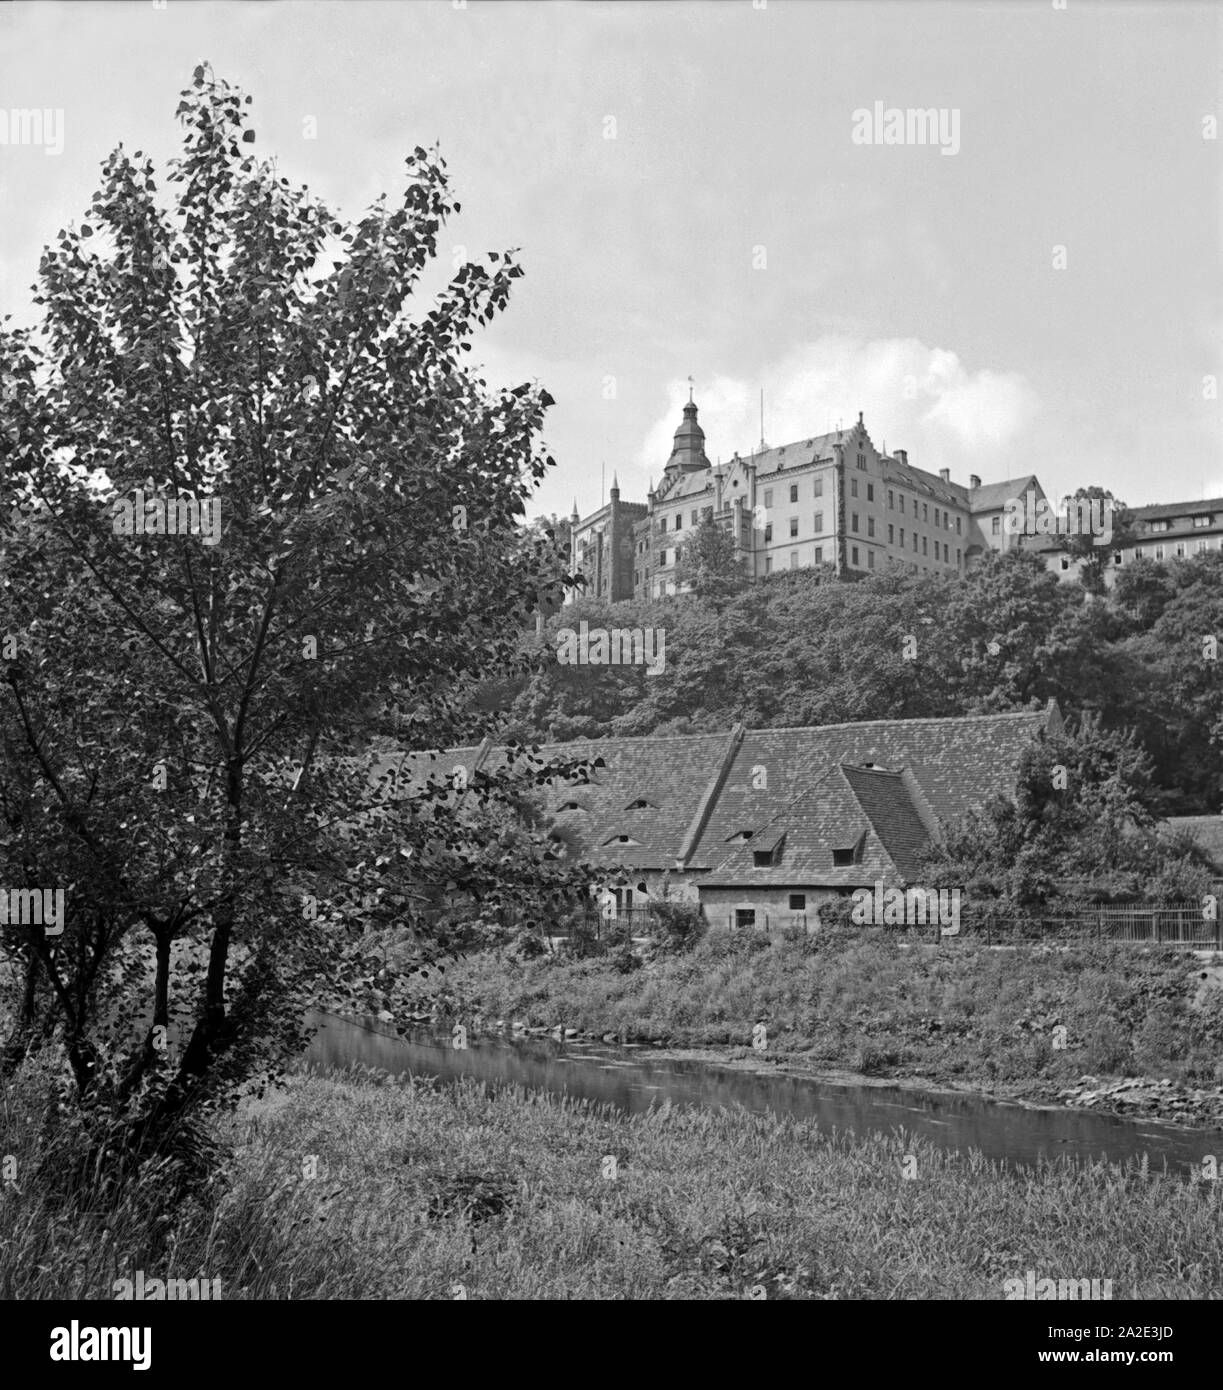 Ansicht von Schloß Osterstein à Gera, Deutschland 1930 er Jahre. Vue de château Osterstein à Gera, Allemagne 1930. Banque D'Images